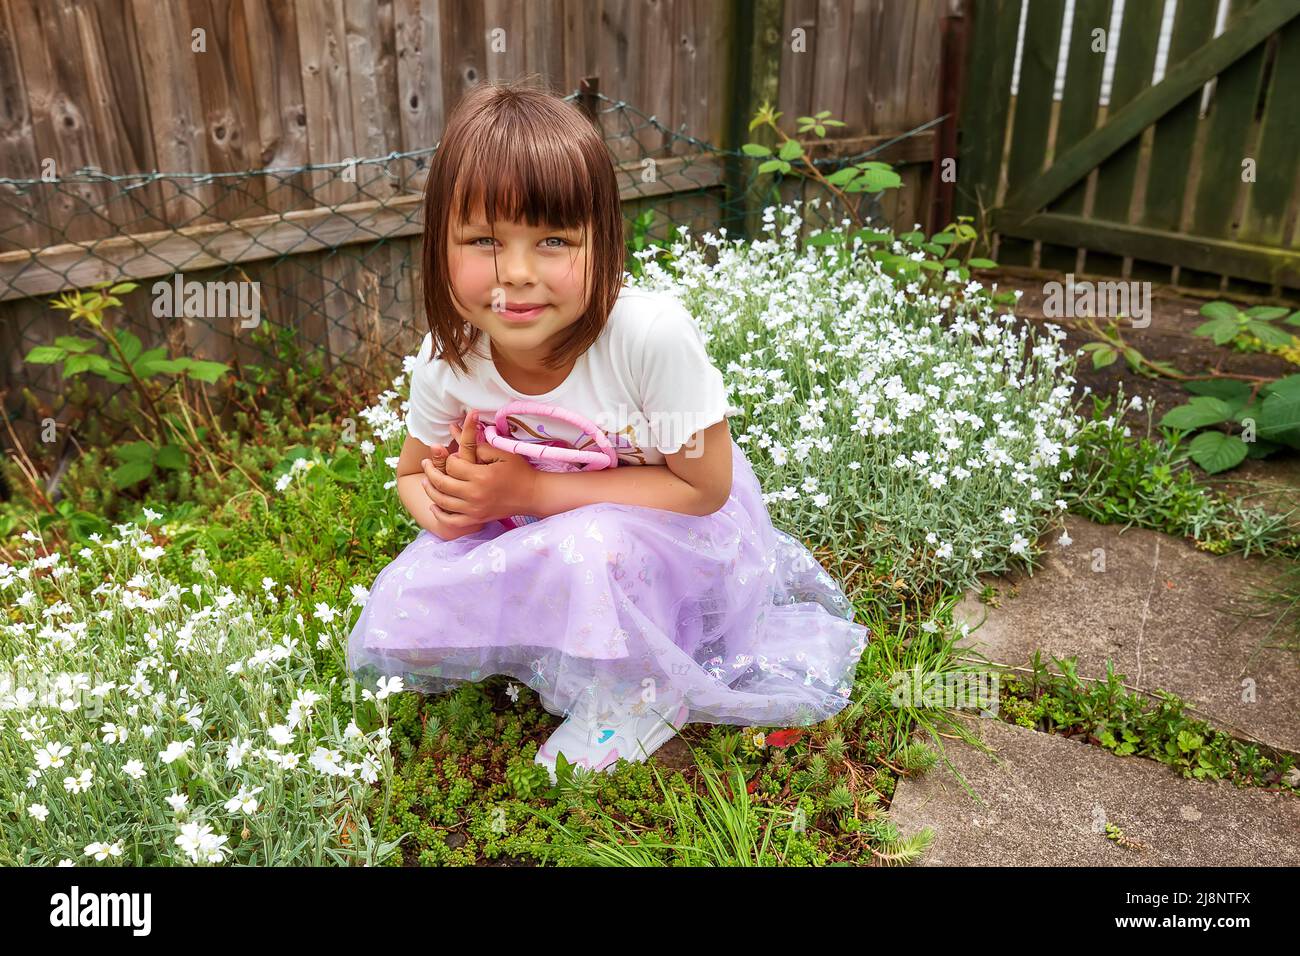 Une jolie fille souriante joue dans l'arrière-cour avec un petit sac rose. Jour ensoleillé. Bon temps de printemps Banque D'Images